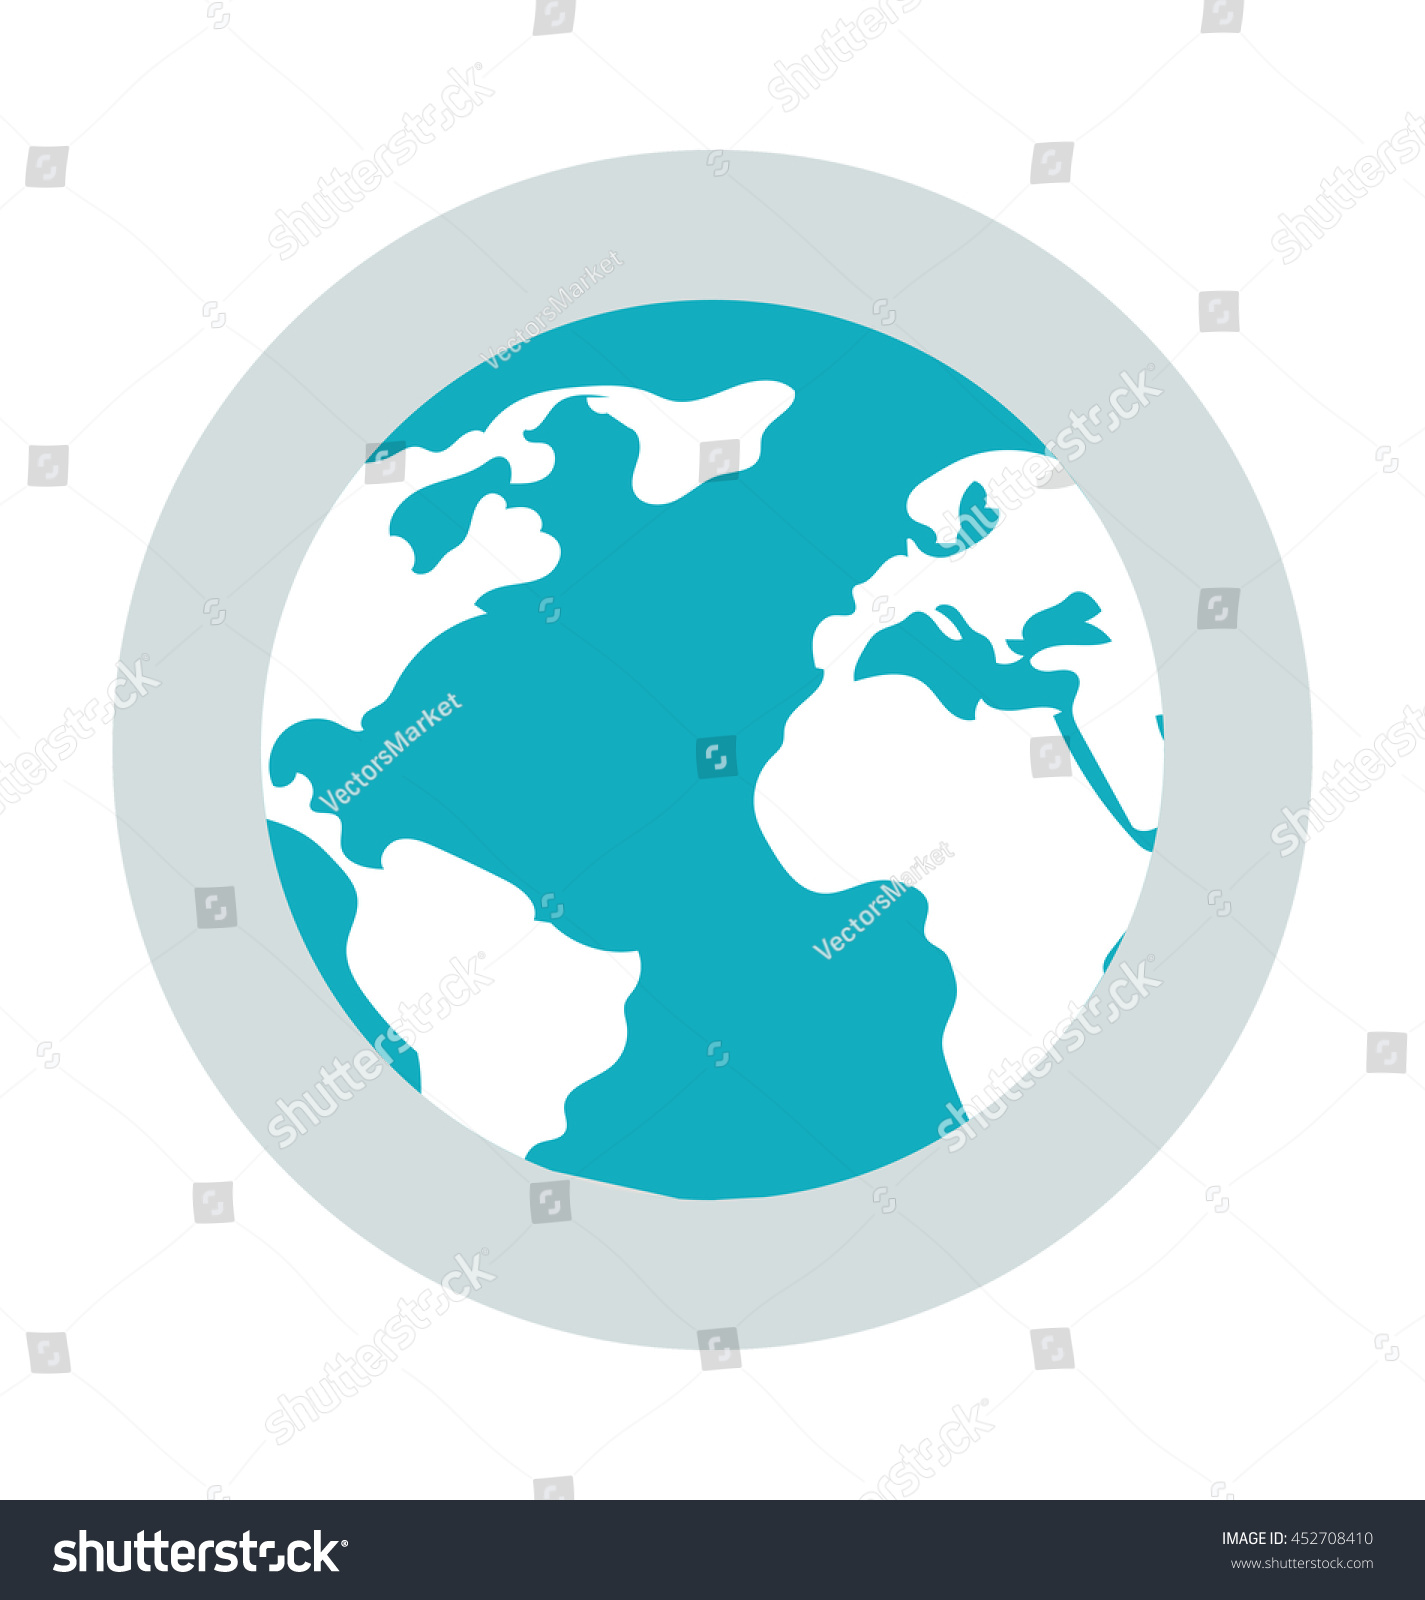 Globe Colored Vector Icon Stock Vector 452708410 - Shutterstock